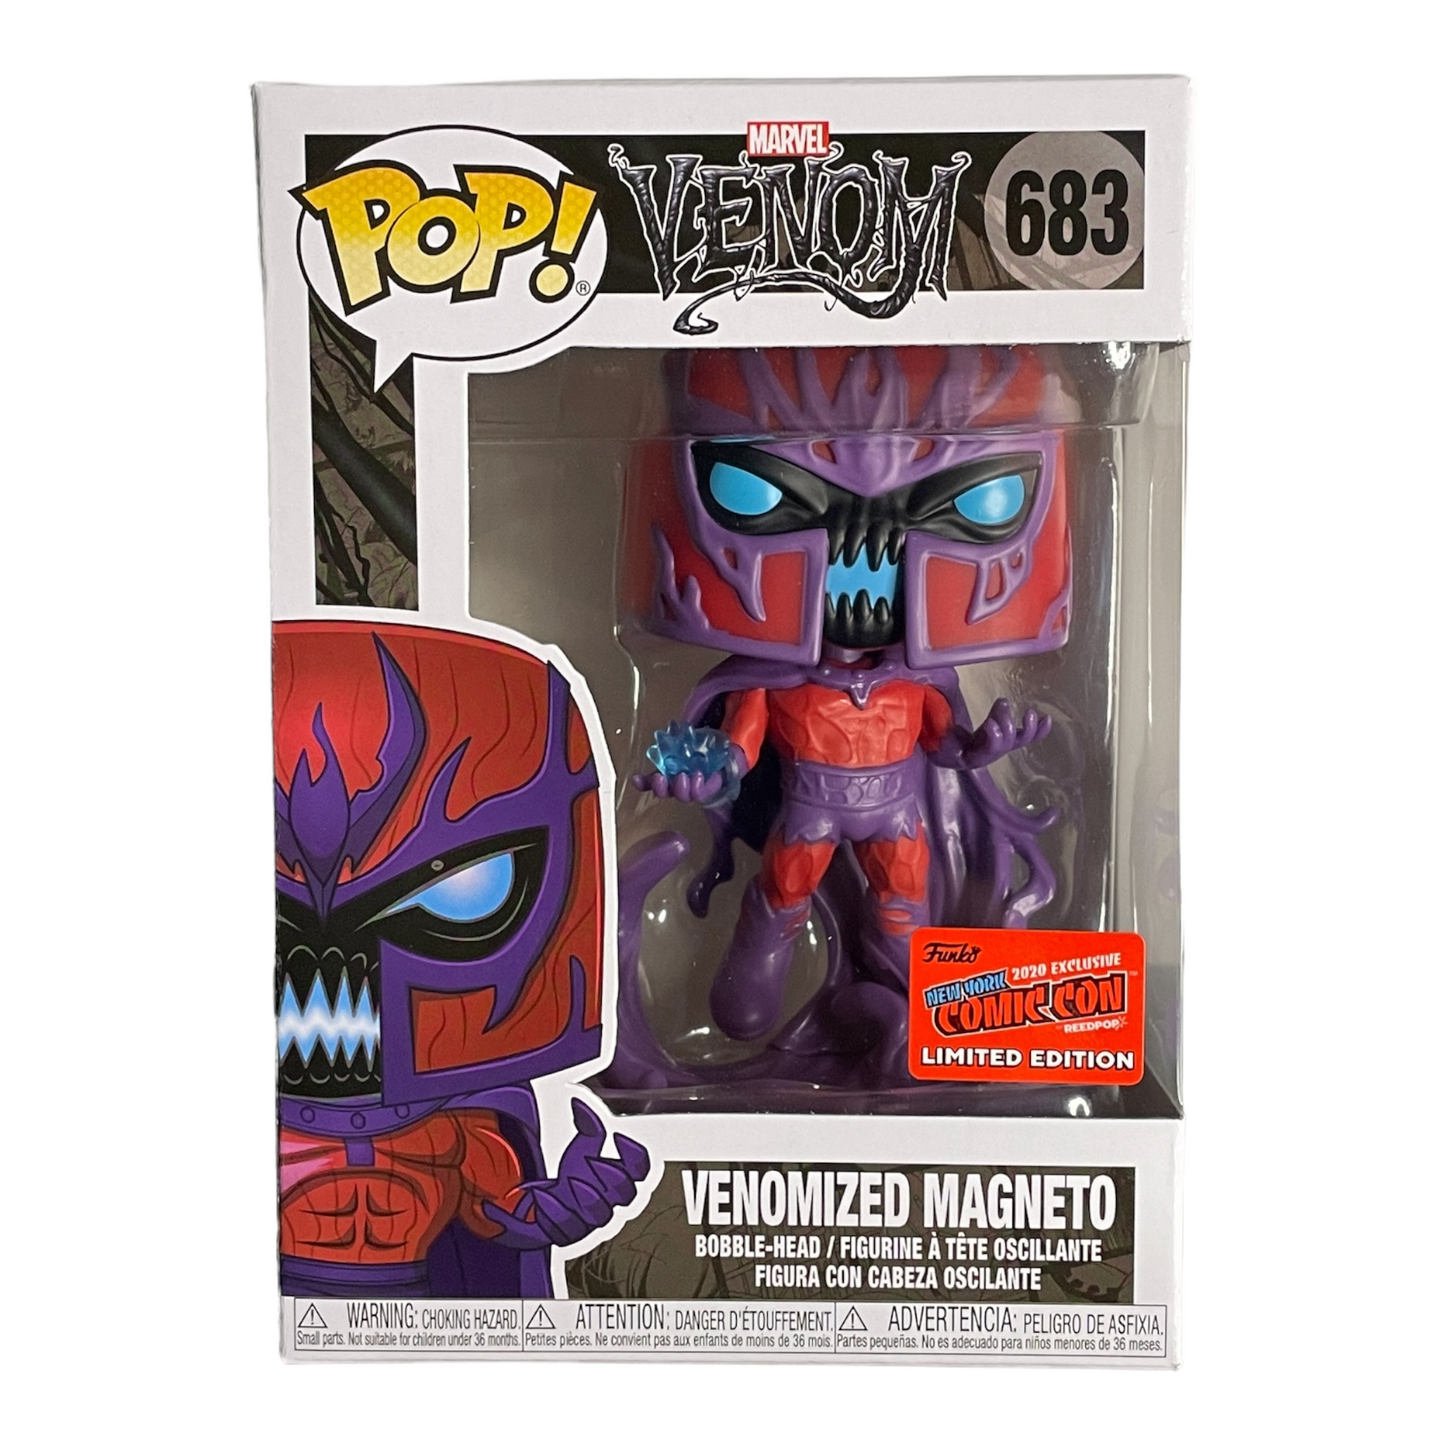 Venomized Magneto #683